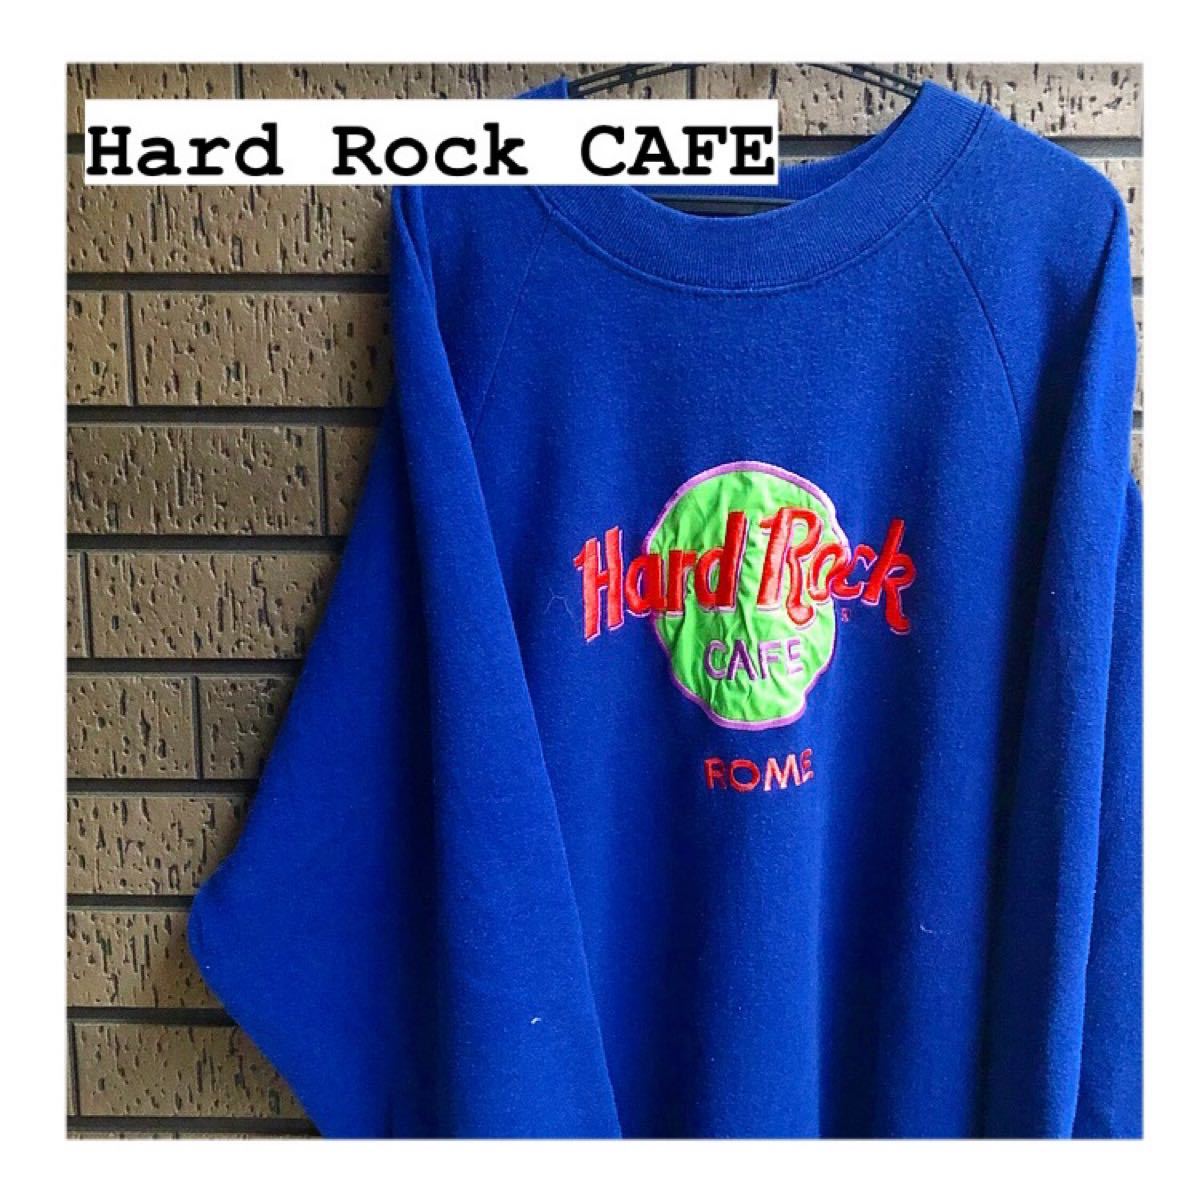 《Hard Rock CAFE》大人気 ハードロックカフェ スウェット 刺繍 USA製 スウェットトレーナー